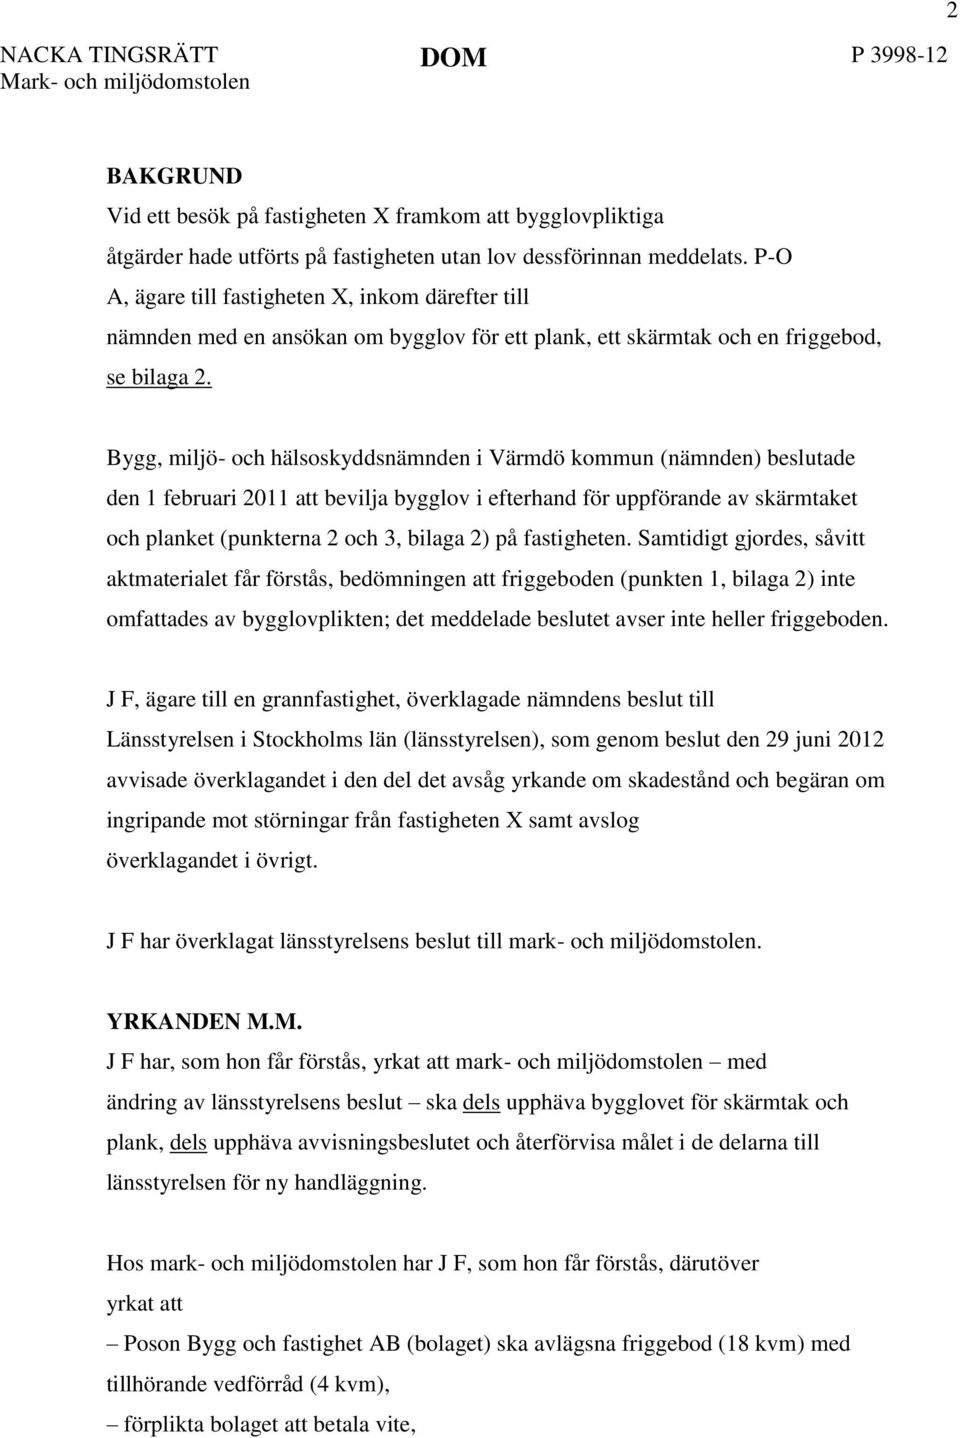 Bygg, miljö- och hälsoskyddsnämnden i Värmdö kommun (nämnden) beslutade den 1 februari 2011 att bevilja bygglov i efterhand för uppförande av skärmtaket och planket (punkterna 2 och 3, bilaga 2) på